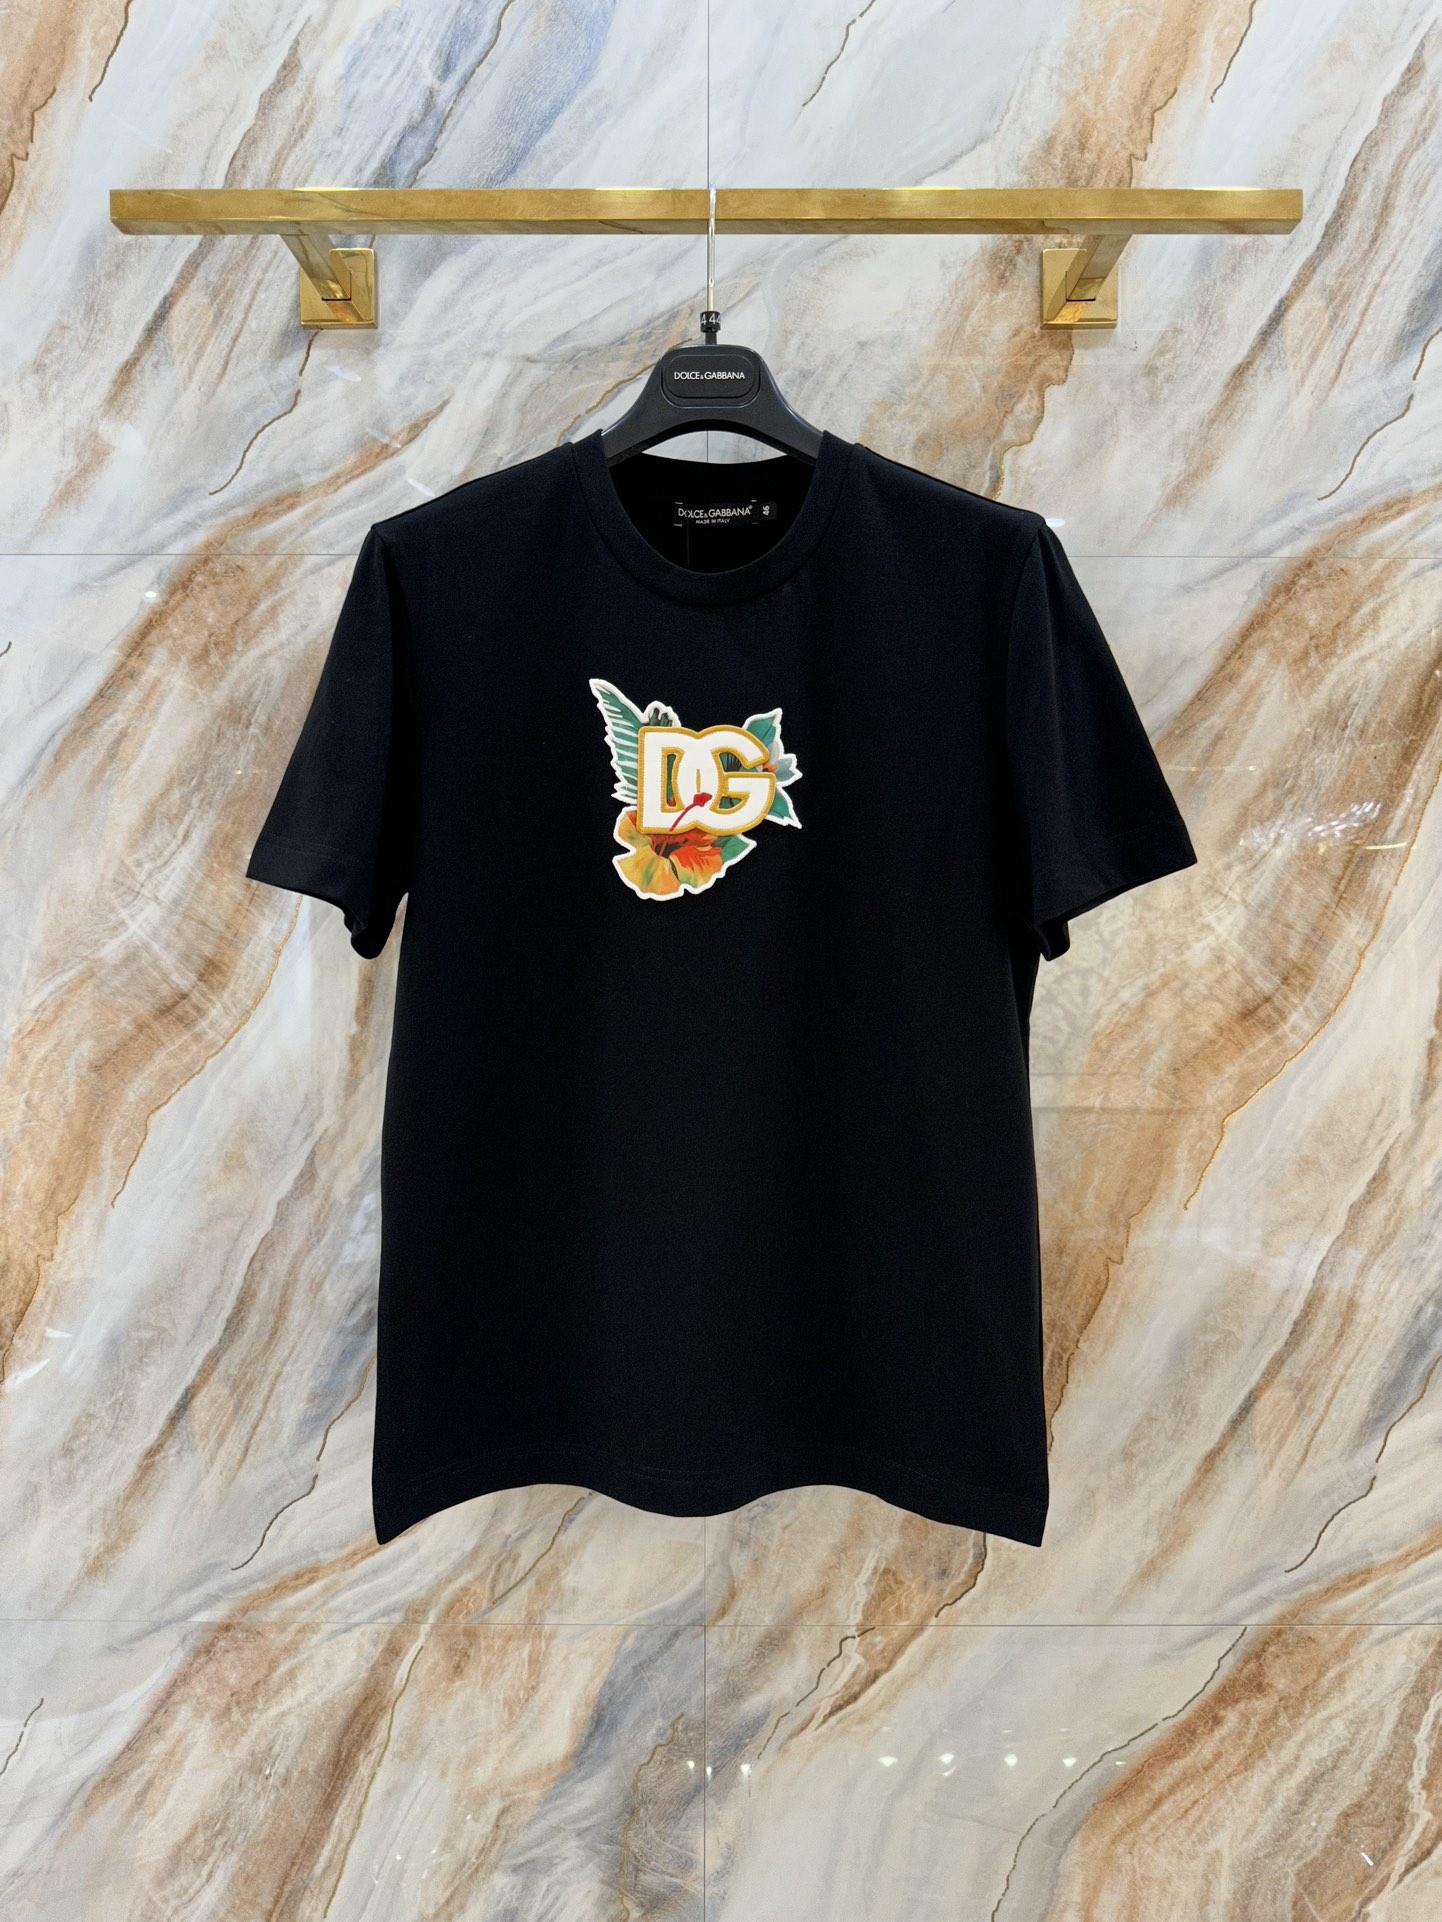 cotton-t-shirt-dg-7222_16845021131-1000